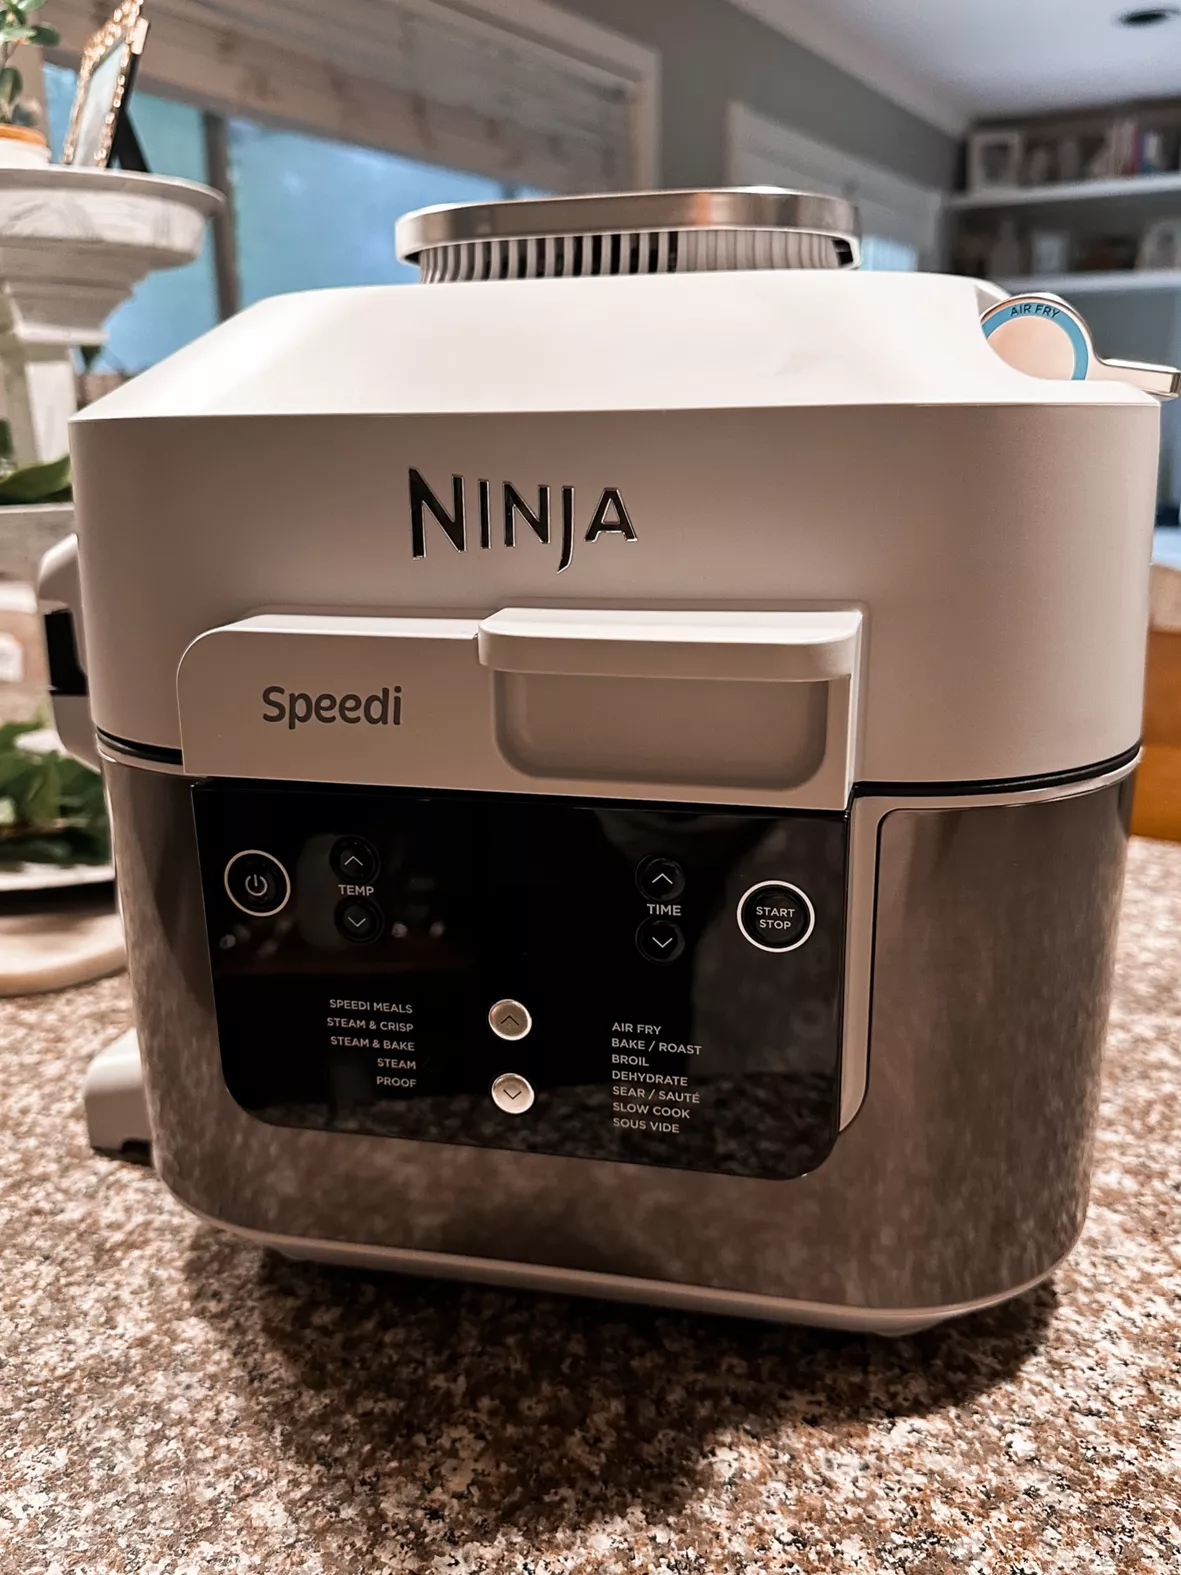 Ninja Speedi 6-Qt Rapid Cooker & … curated on LTK